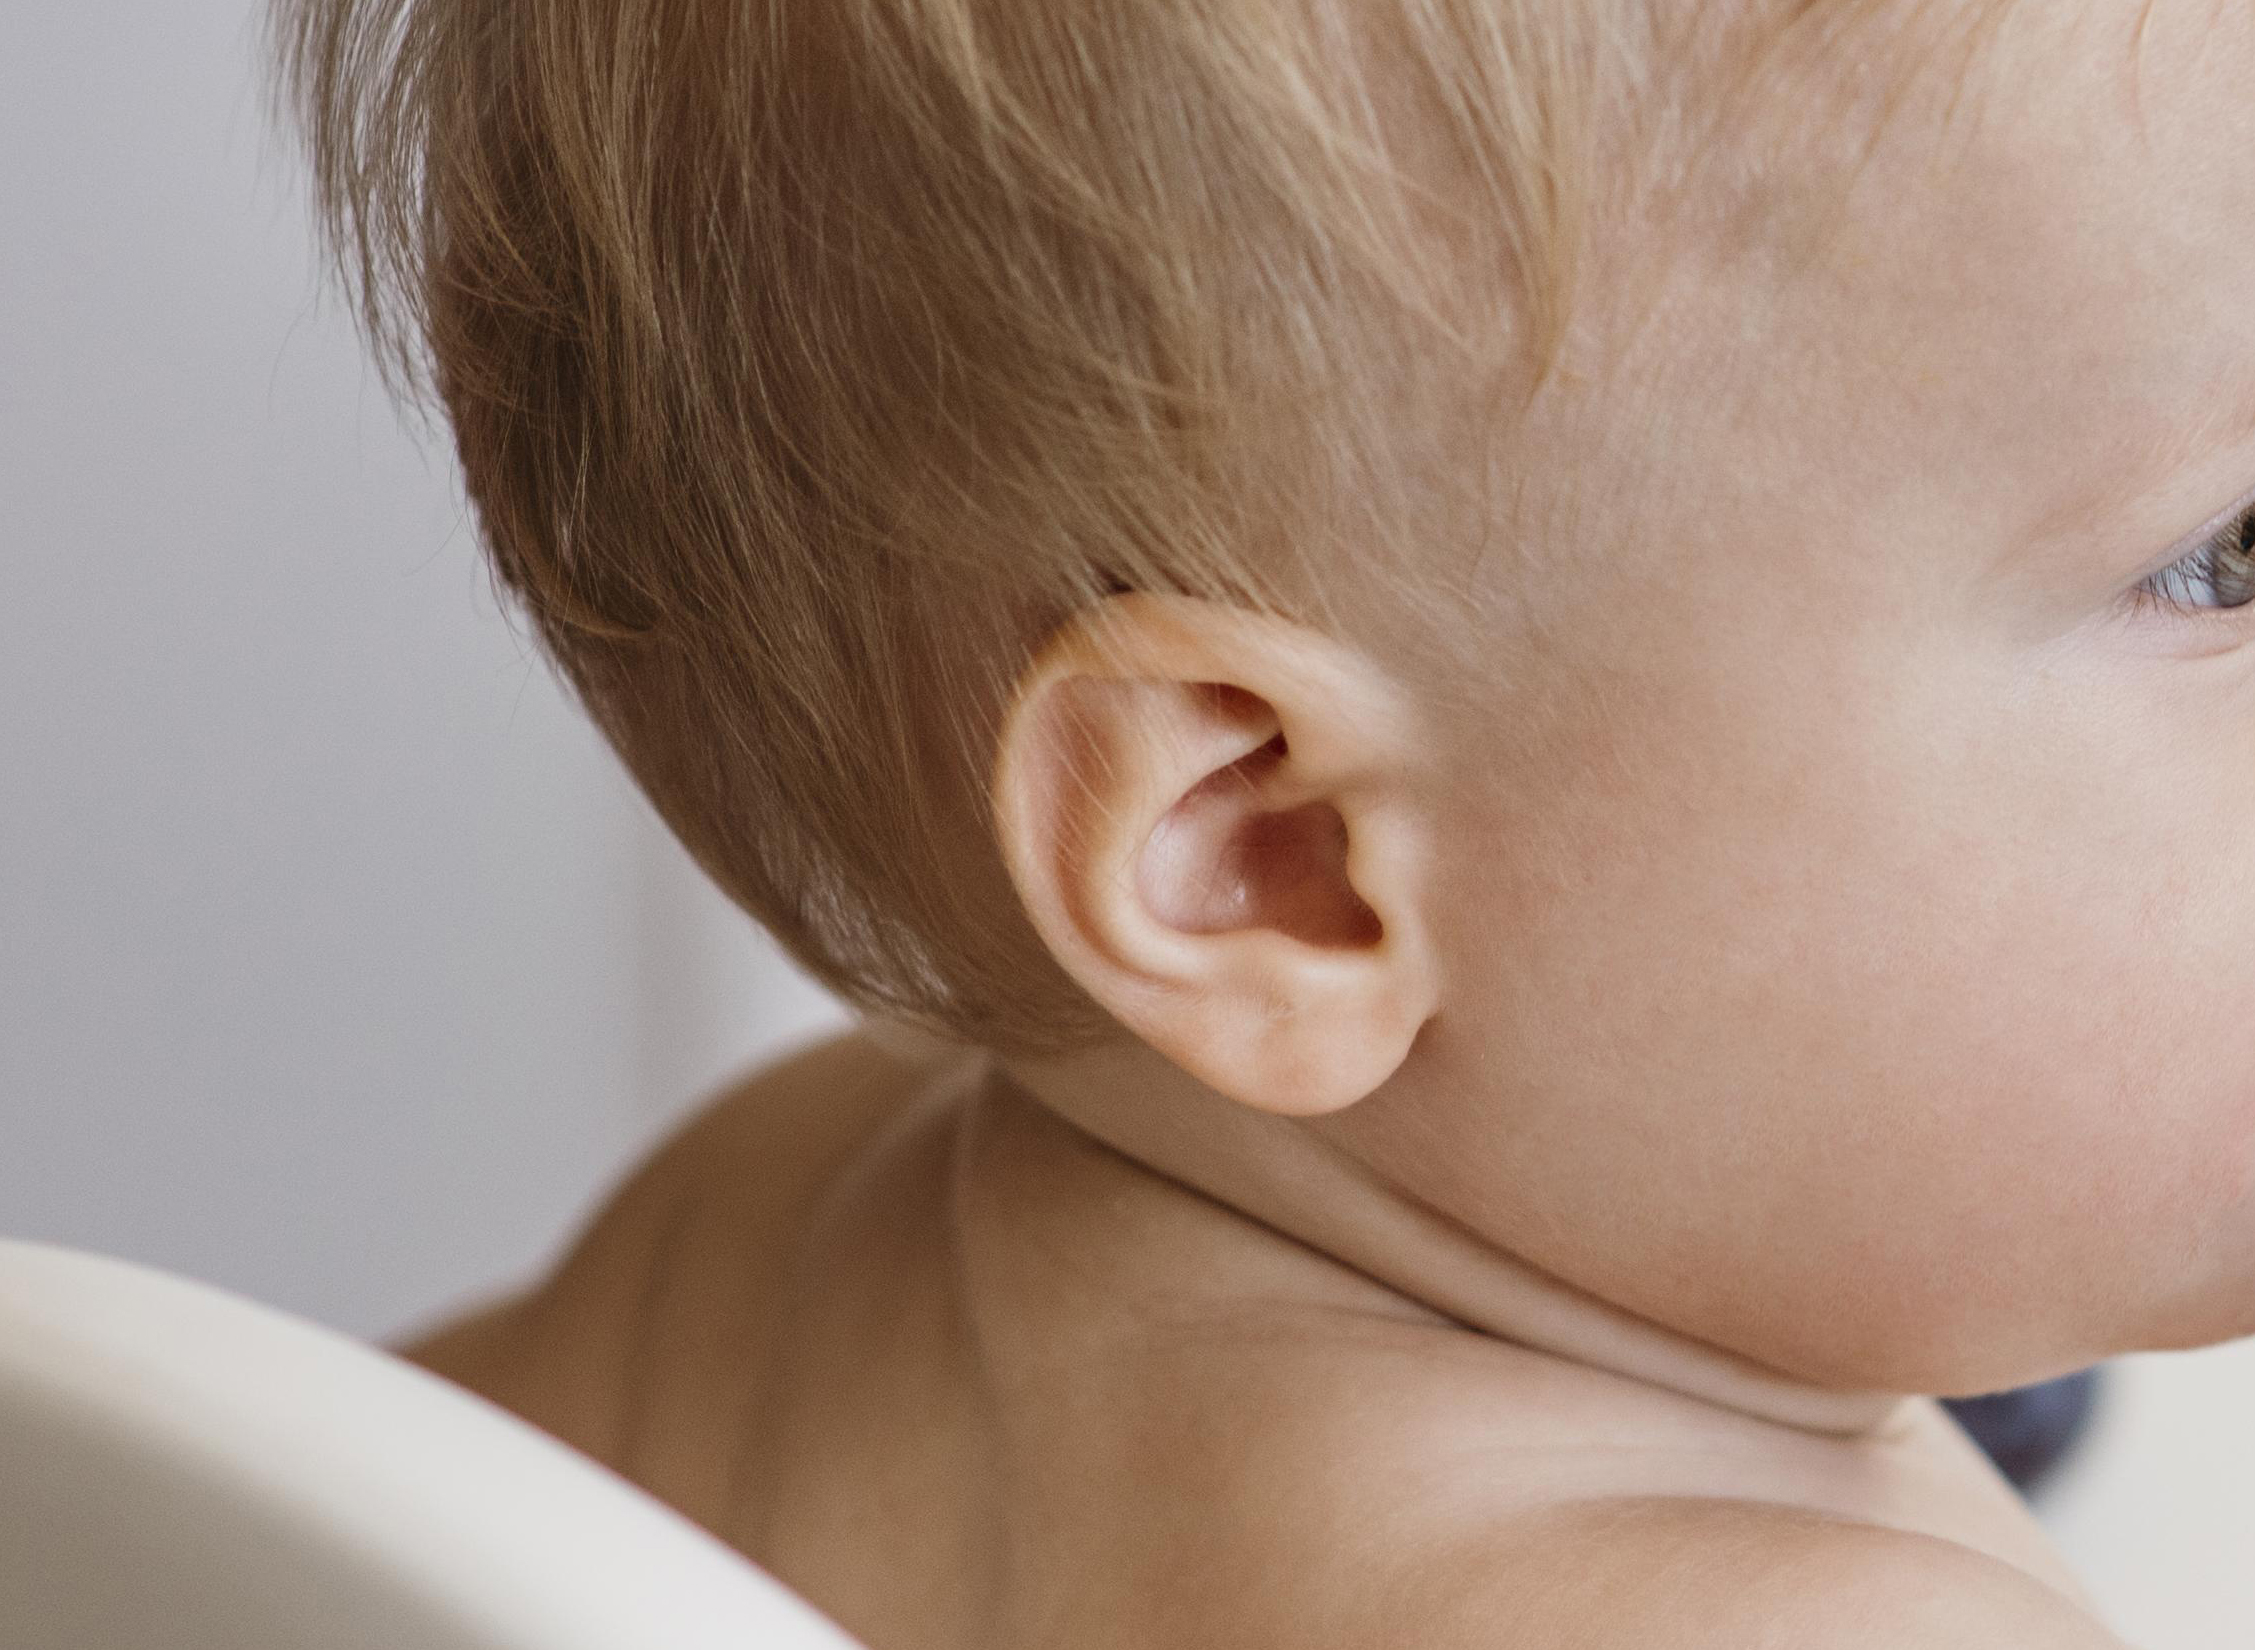 Plano detalle del oído de un bebé